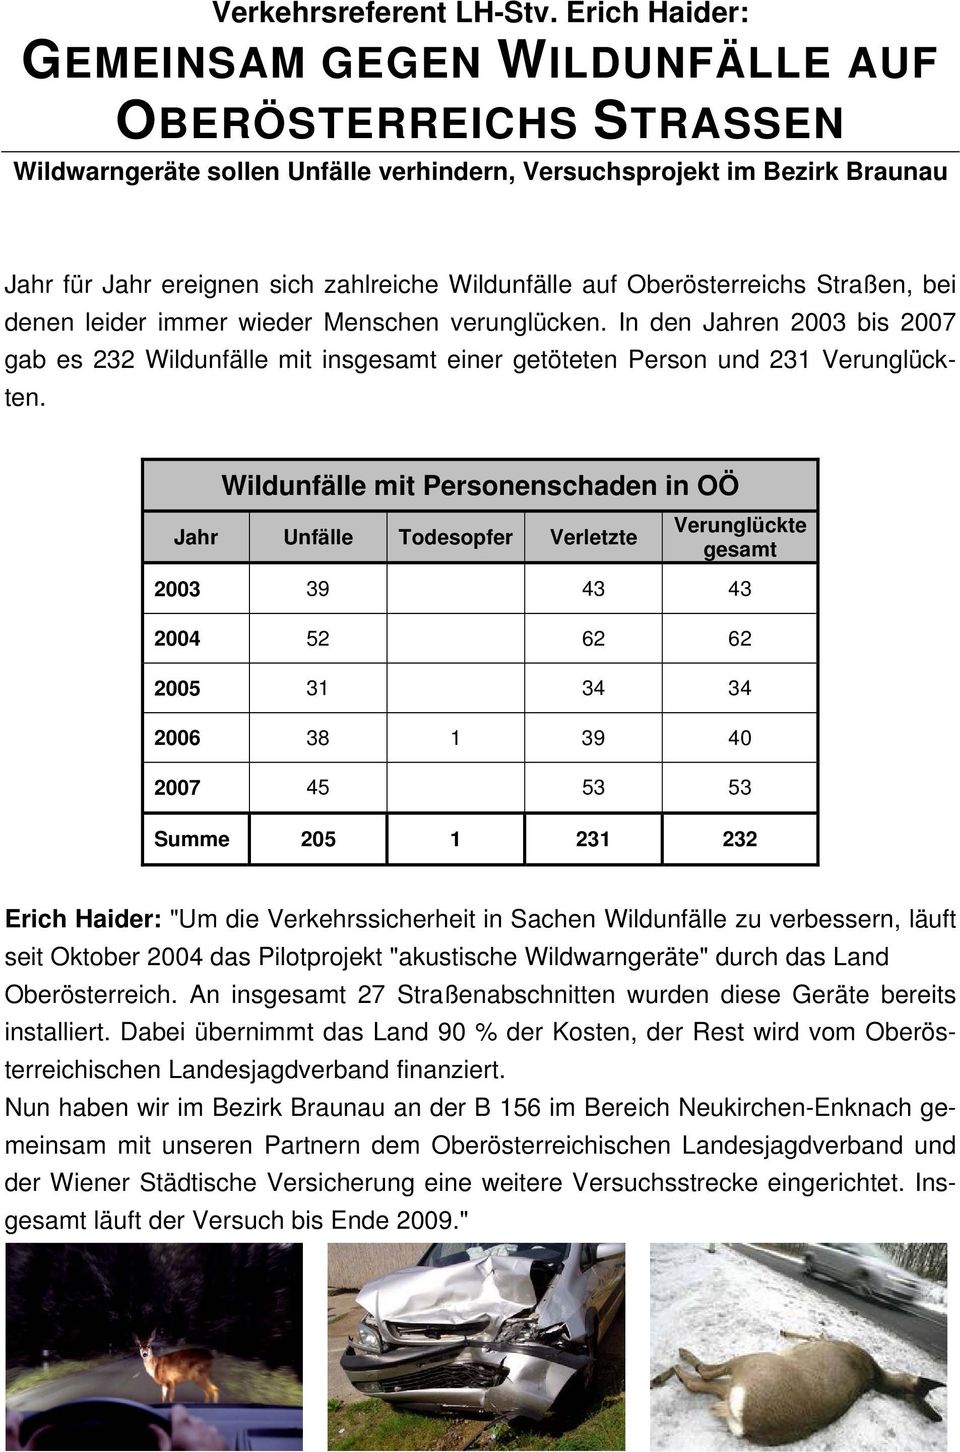 auf Oberösterreichs Straßen, bei denen leider immer wieder Menschen verunglücken. In den Jahren 2003 bis 2007 gab es 232 Wildunfälle mit insgesamt einer getöteten Person und 231 Verunglückten.